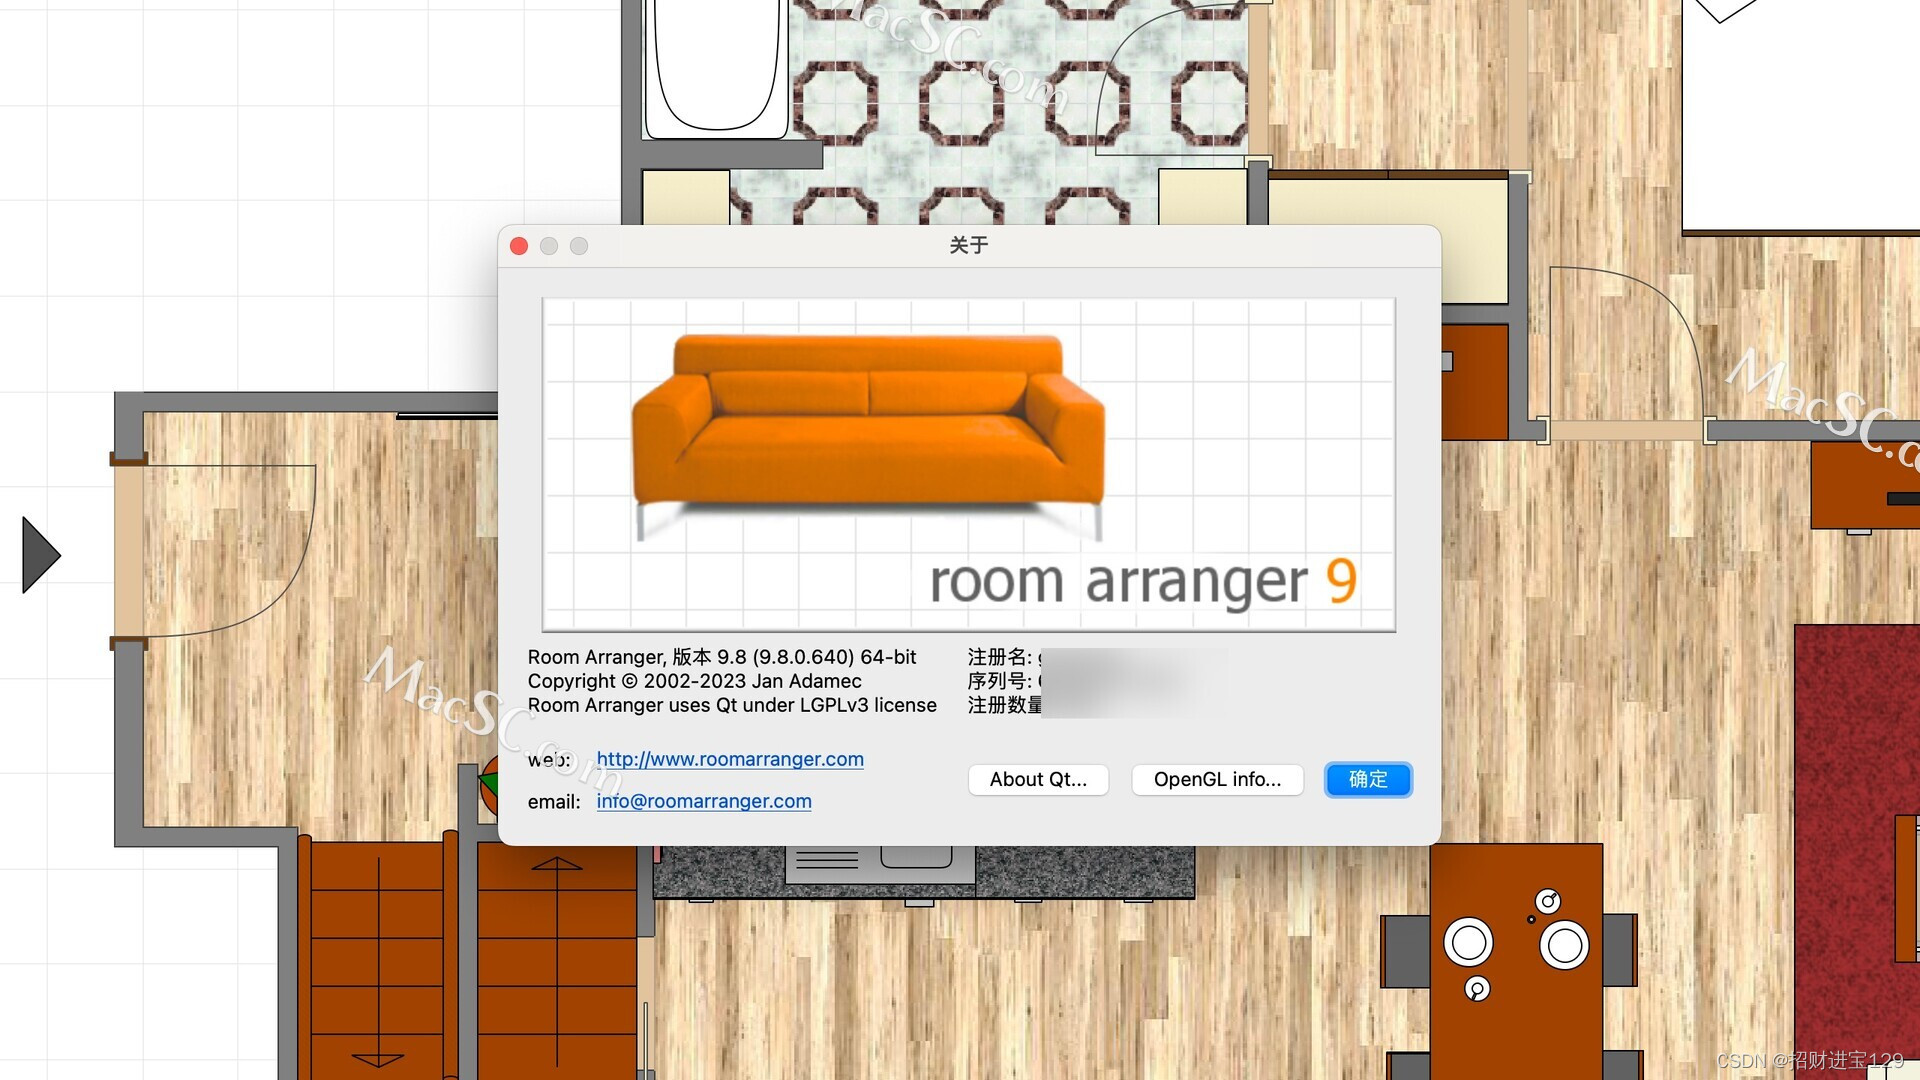 Room Arranger for Mac: 轻松创造梦想家园的必备设计软件